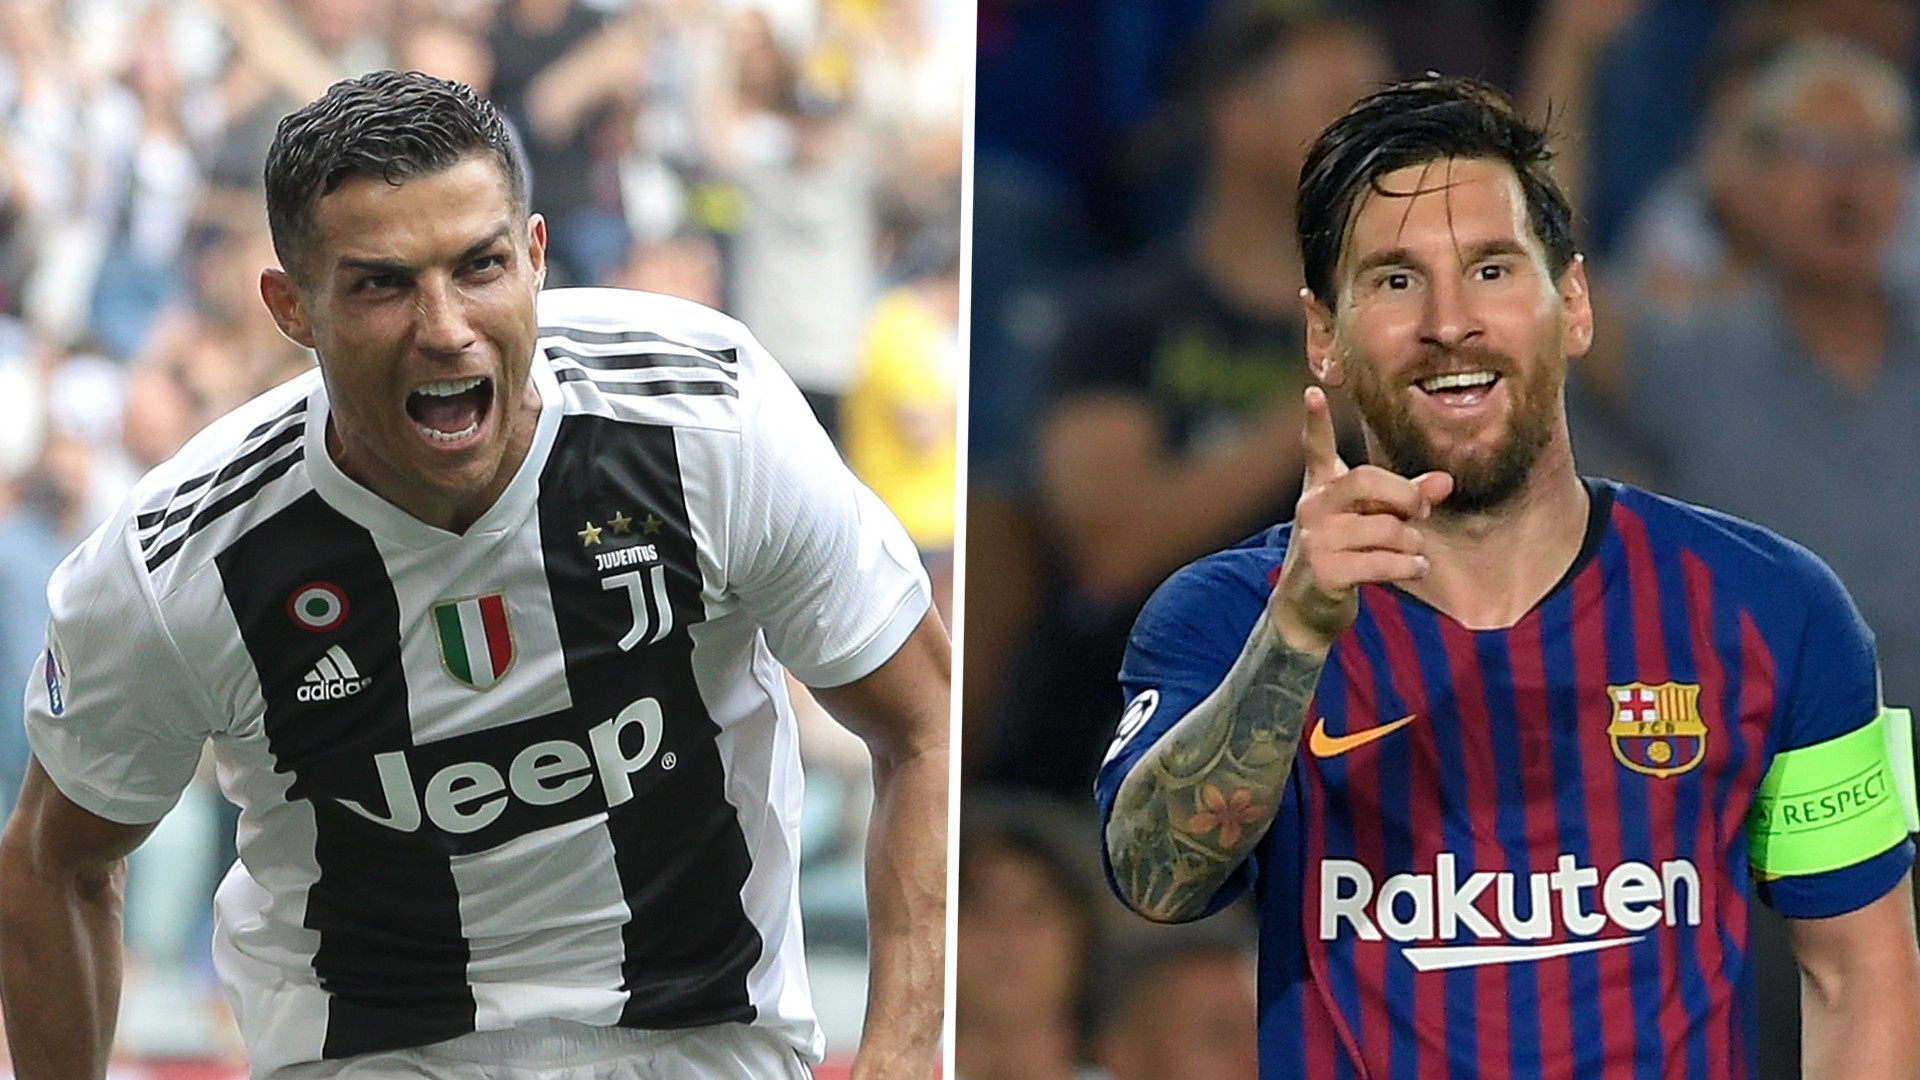 Thống kê chỉ ra Ronaldo hay Messi sẽ trở thành vua ghi bàn năm 2018? - Ảnh 2.